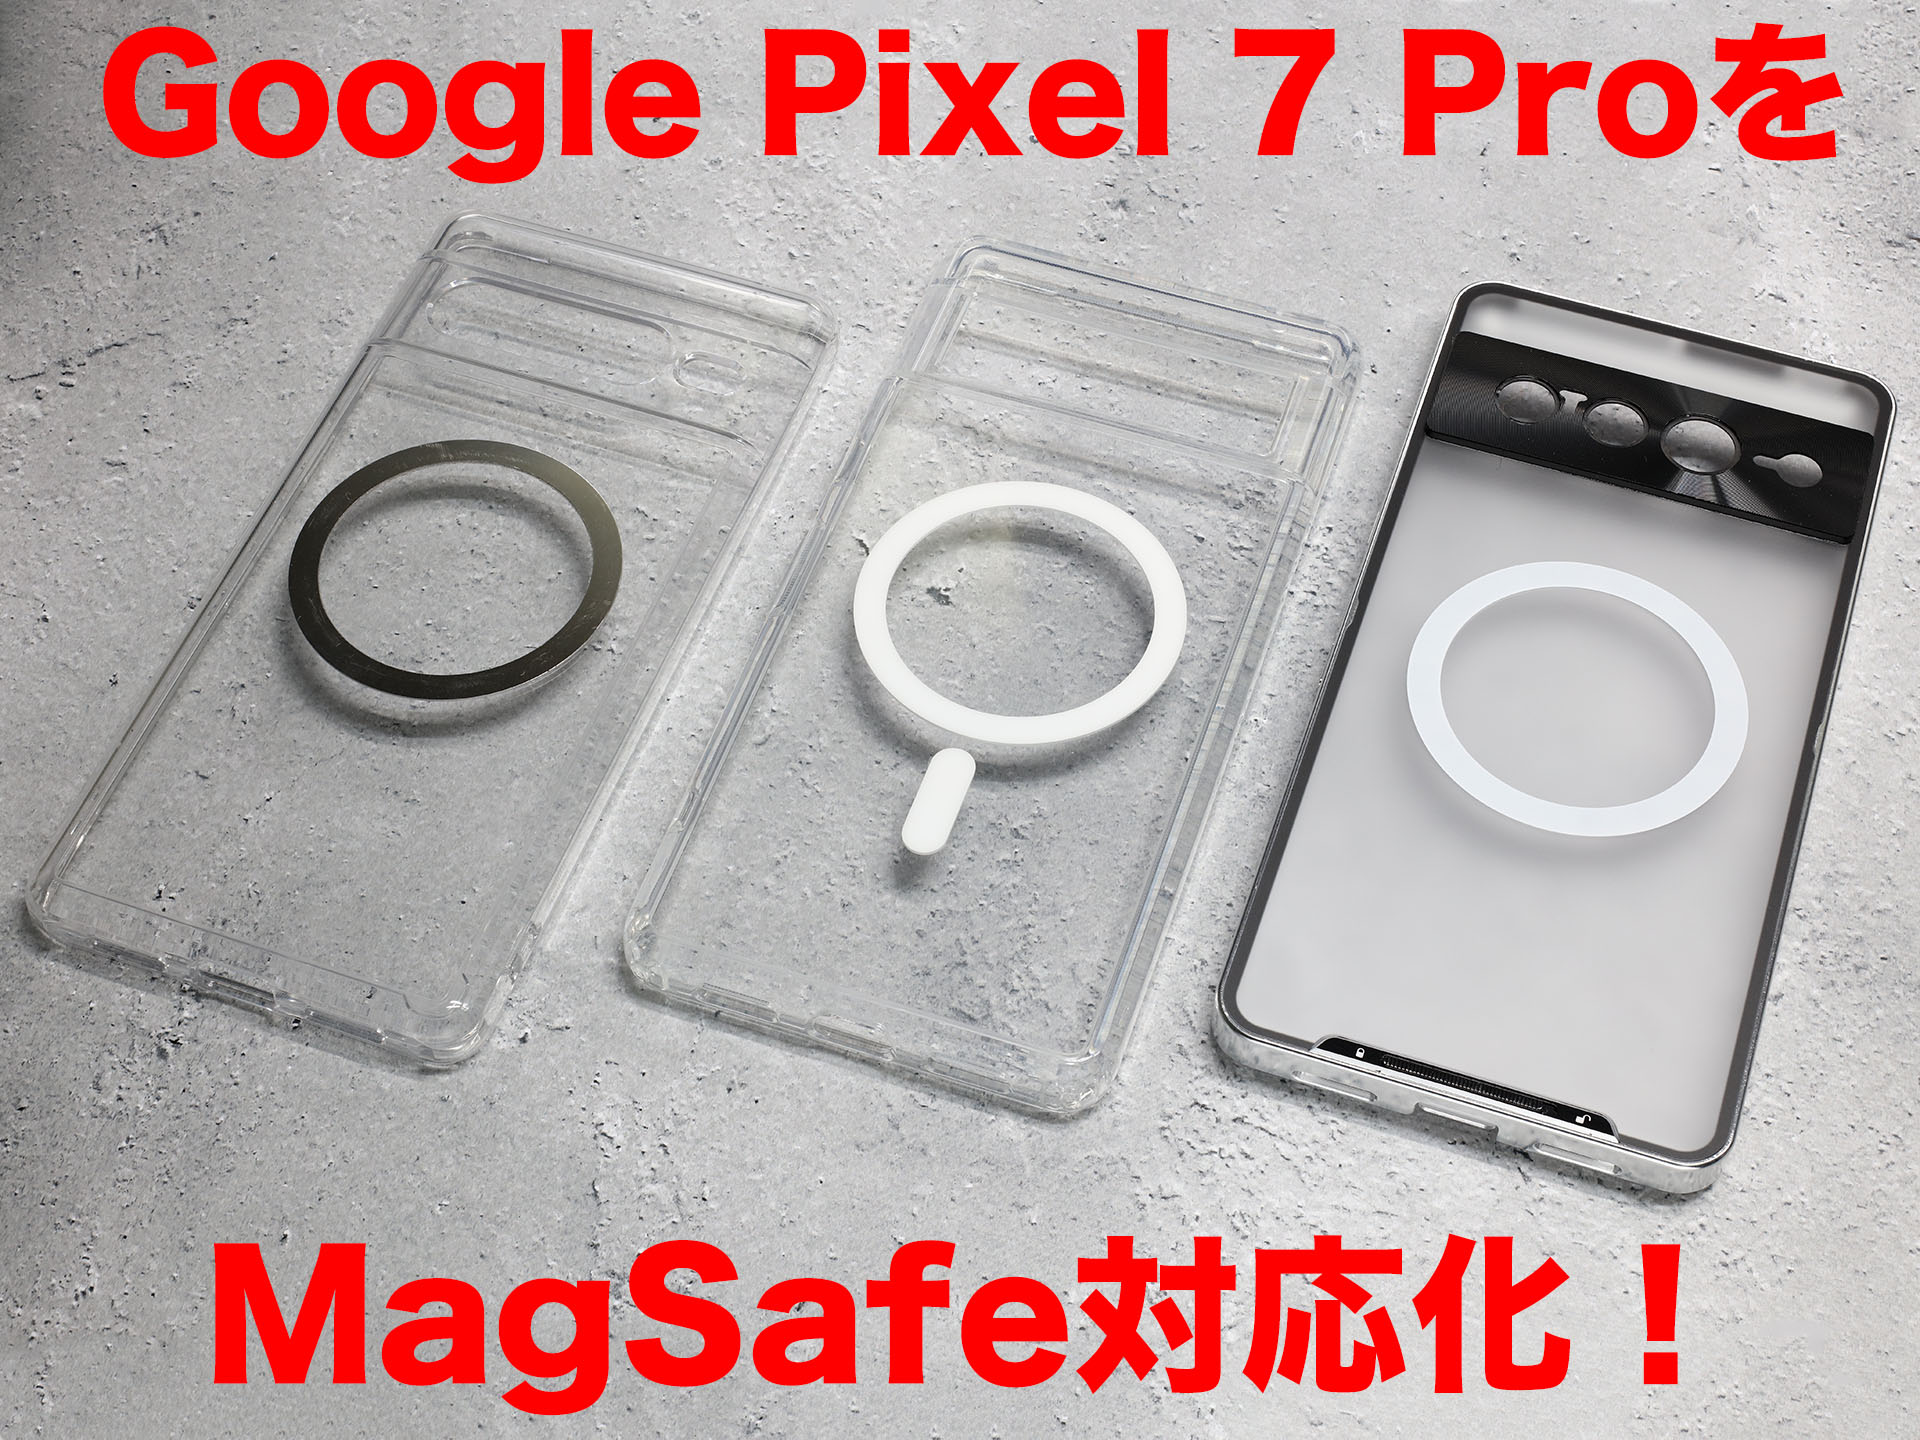 Google Pixel Pro」をMagSafe対応にしてゆきたいッ!!! ケータイ Watch